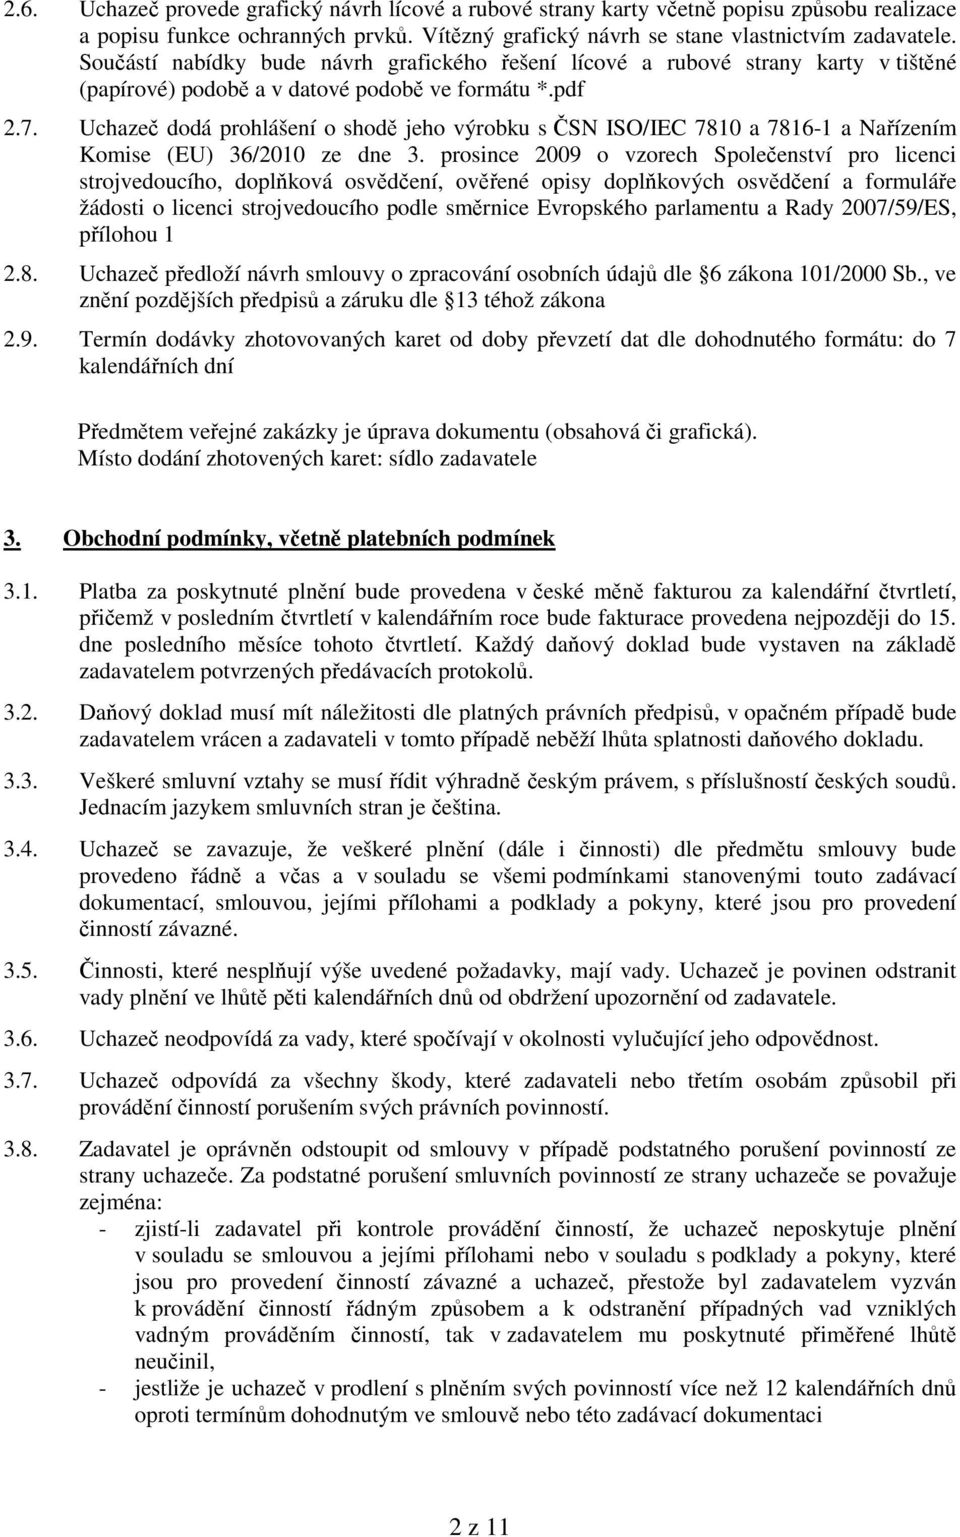 Uchazeč dodá prohlášení o shodě jeho výrobku s ČSN ISO/IEC 7810 a 7816-1 a Nařízením Komise (EU) 36/2010 ze dne 3.